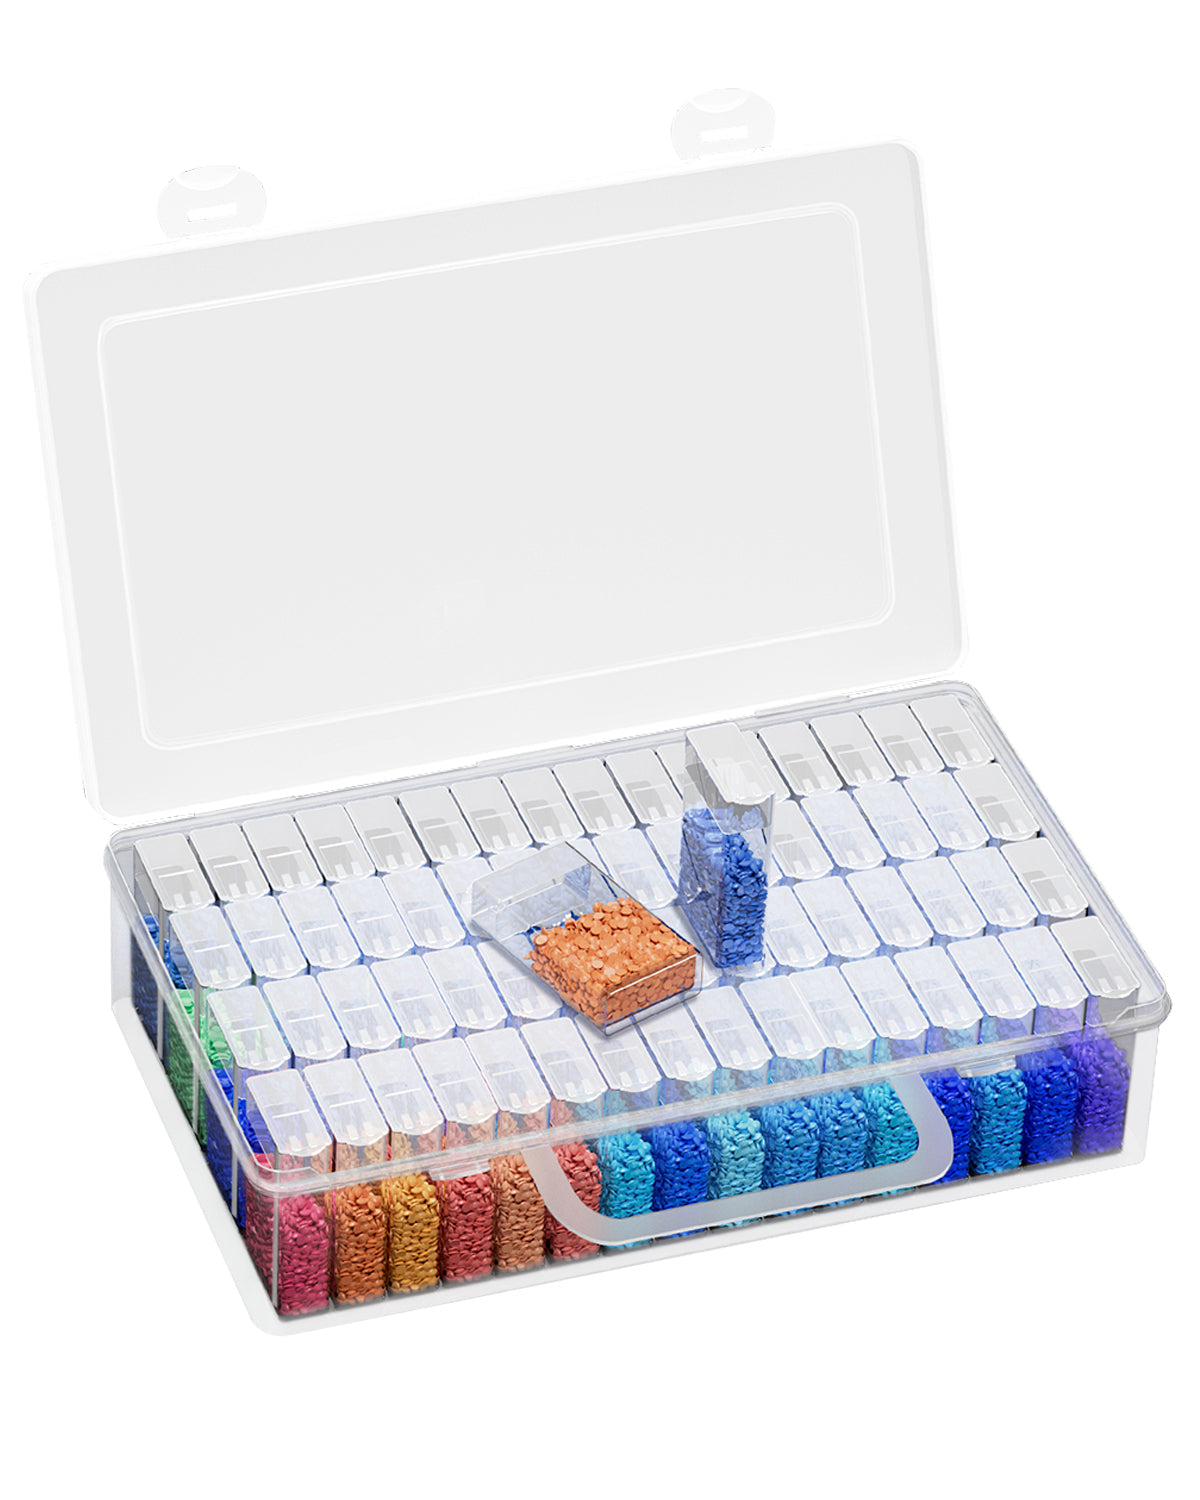 ARTDOT Diamond Painting Storage Containers, Portable Bead Storage Organizer  64 Gird Diamond Painting Accessories (Storage Box)